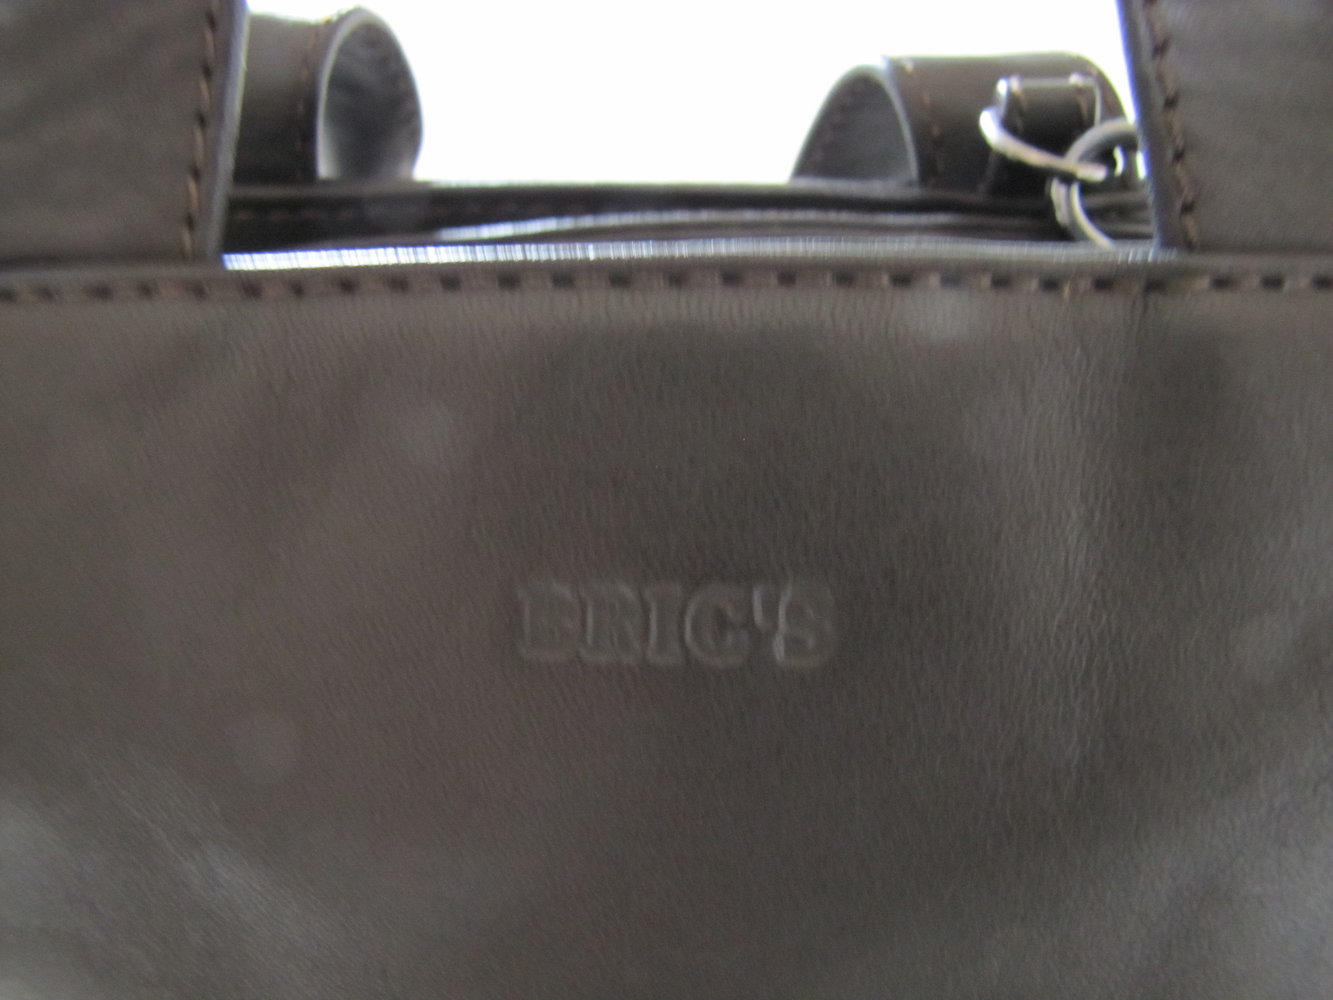 Mini Bag von Bric's